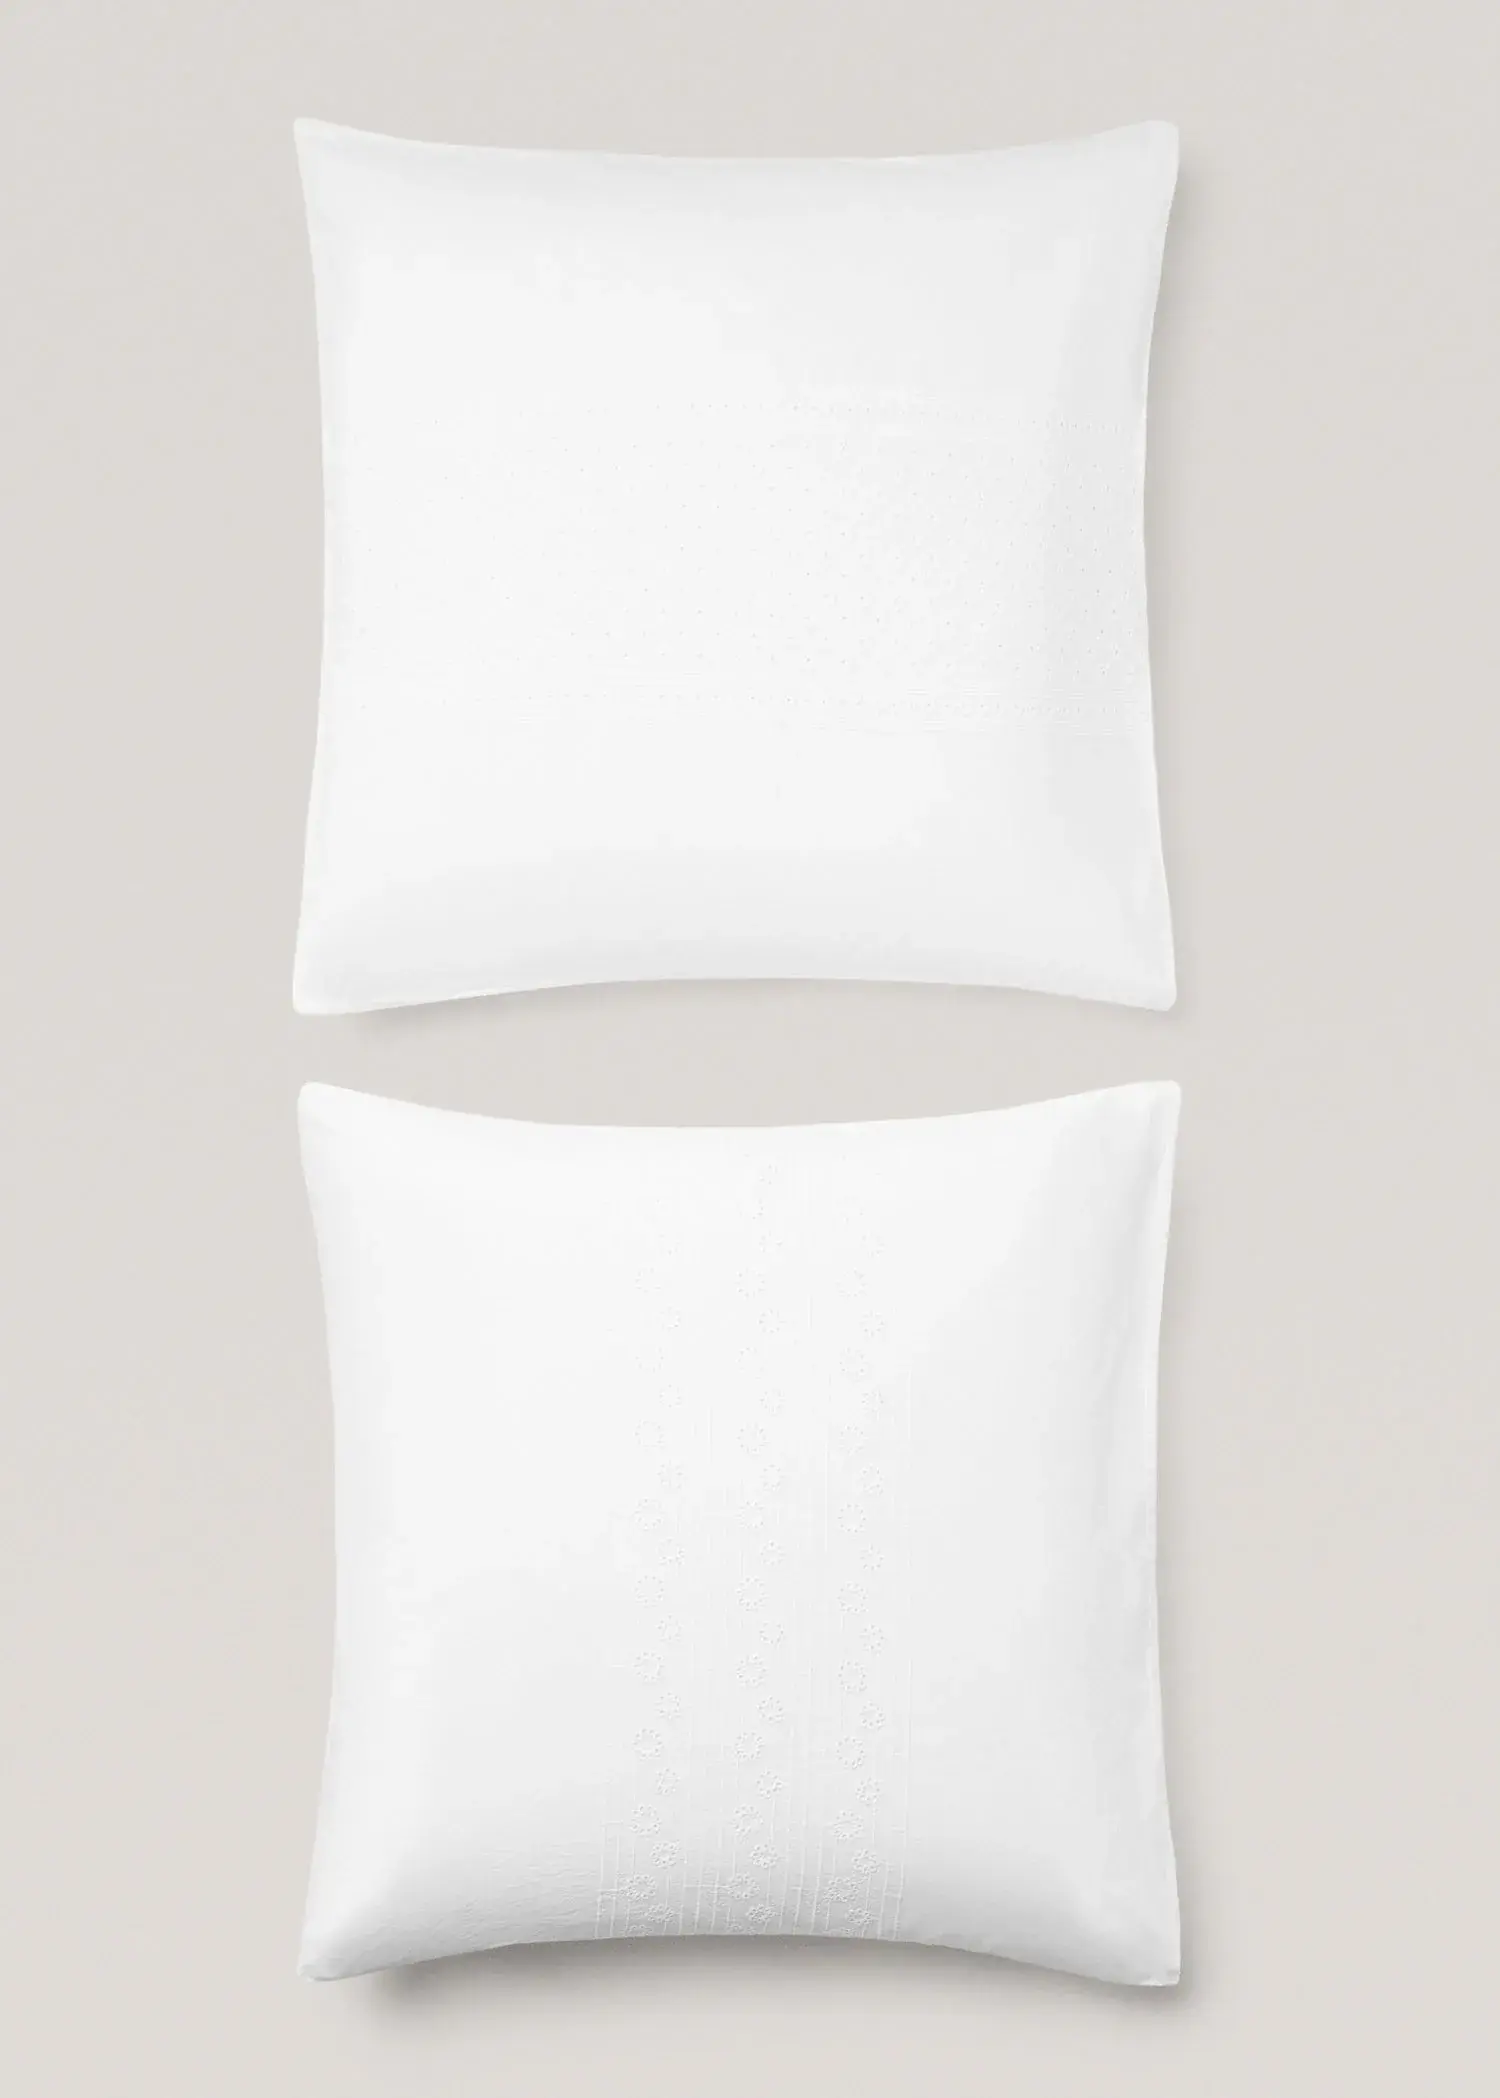 Mango Funda de almohada algodón bordado floral 60x60cm. 1